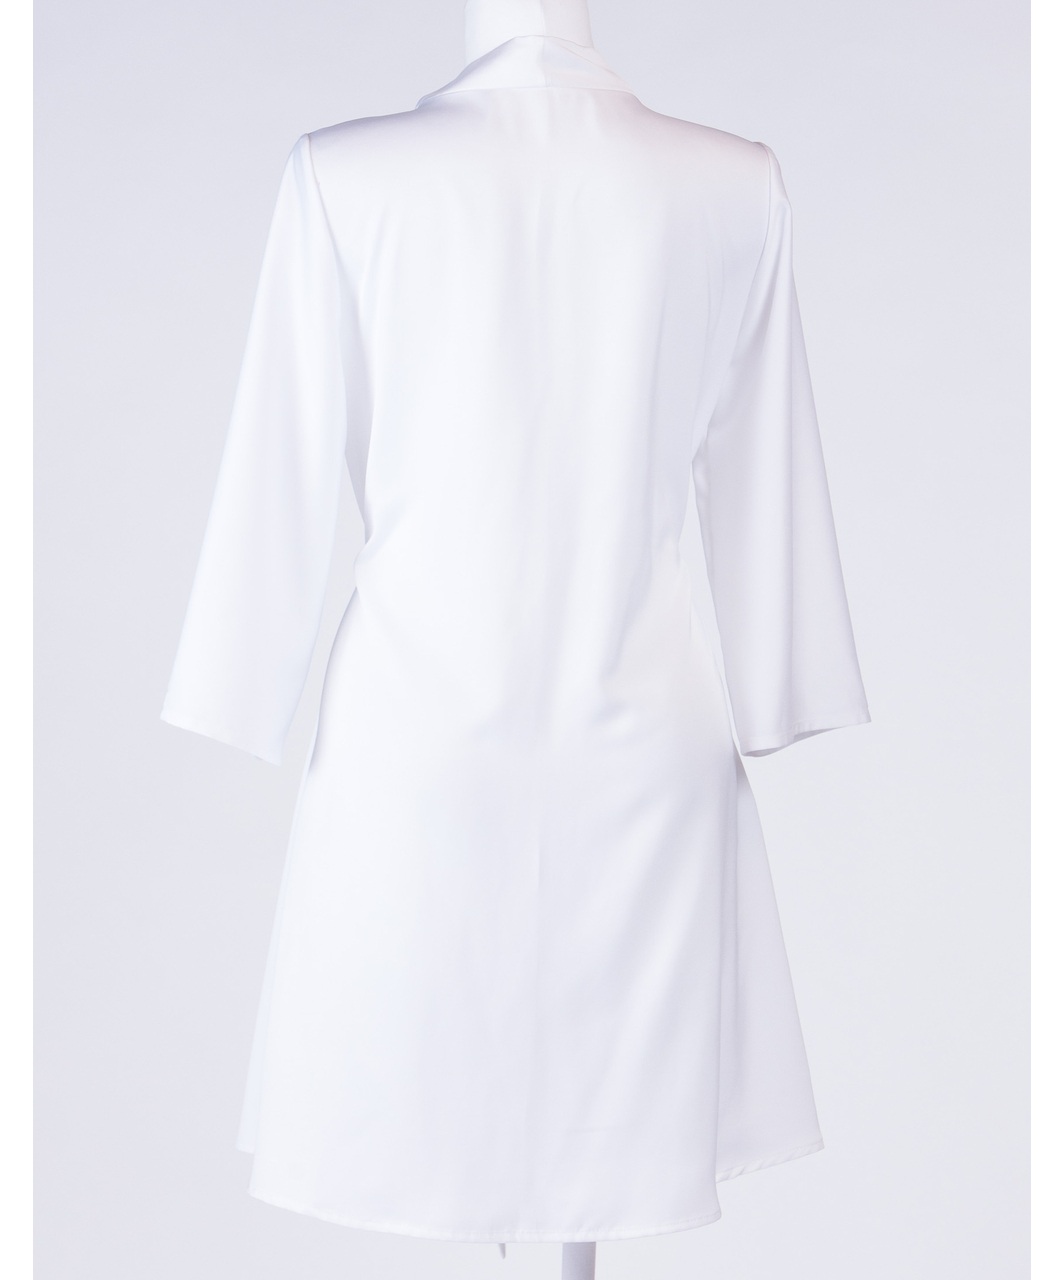 MAKE white satin robe